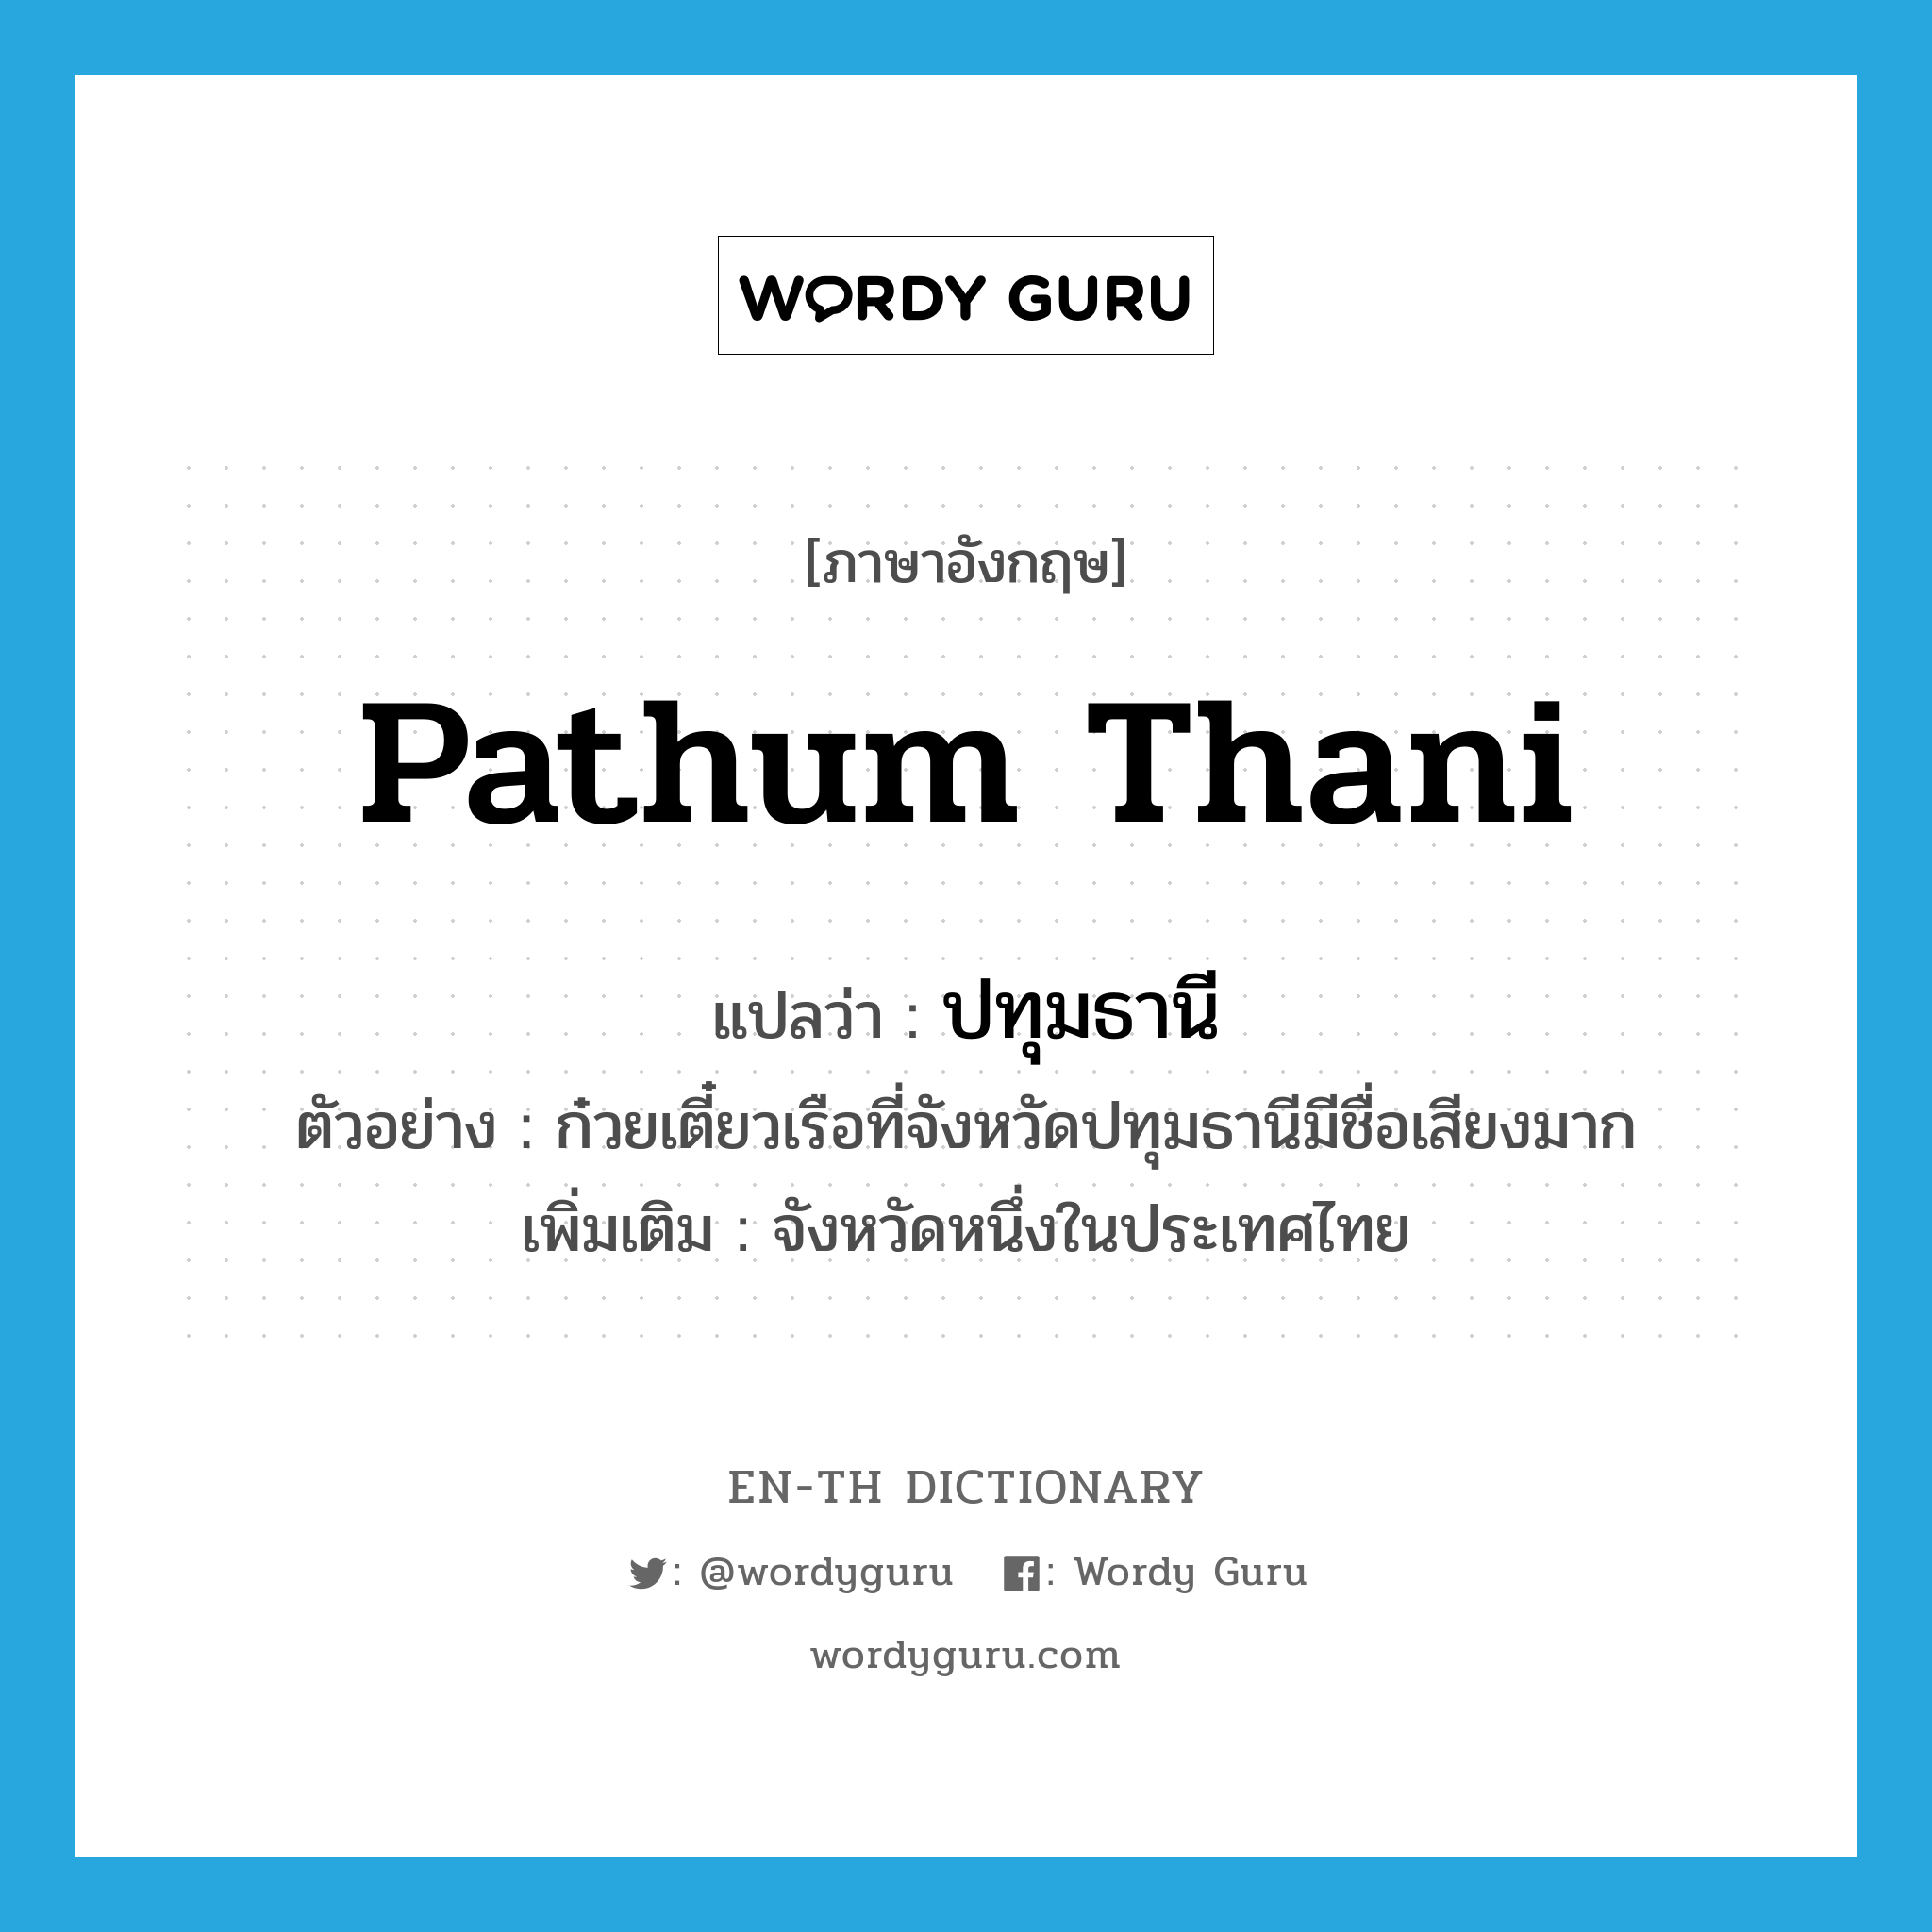 Pathum Thani แปลว่า?, คำศัพท์ภาษาอังกฤษ Pathum Thani แปลว่า ปทุมธานี ประเภท N ตัวอย่าง ก๋วยเตี๋ยวเรือที่จังหวัดปทุมธานีมีชื่อเสียงมาก เพิ่มเติม จังหวัดหนึ่งในประเทศไทย หมวด N